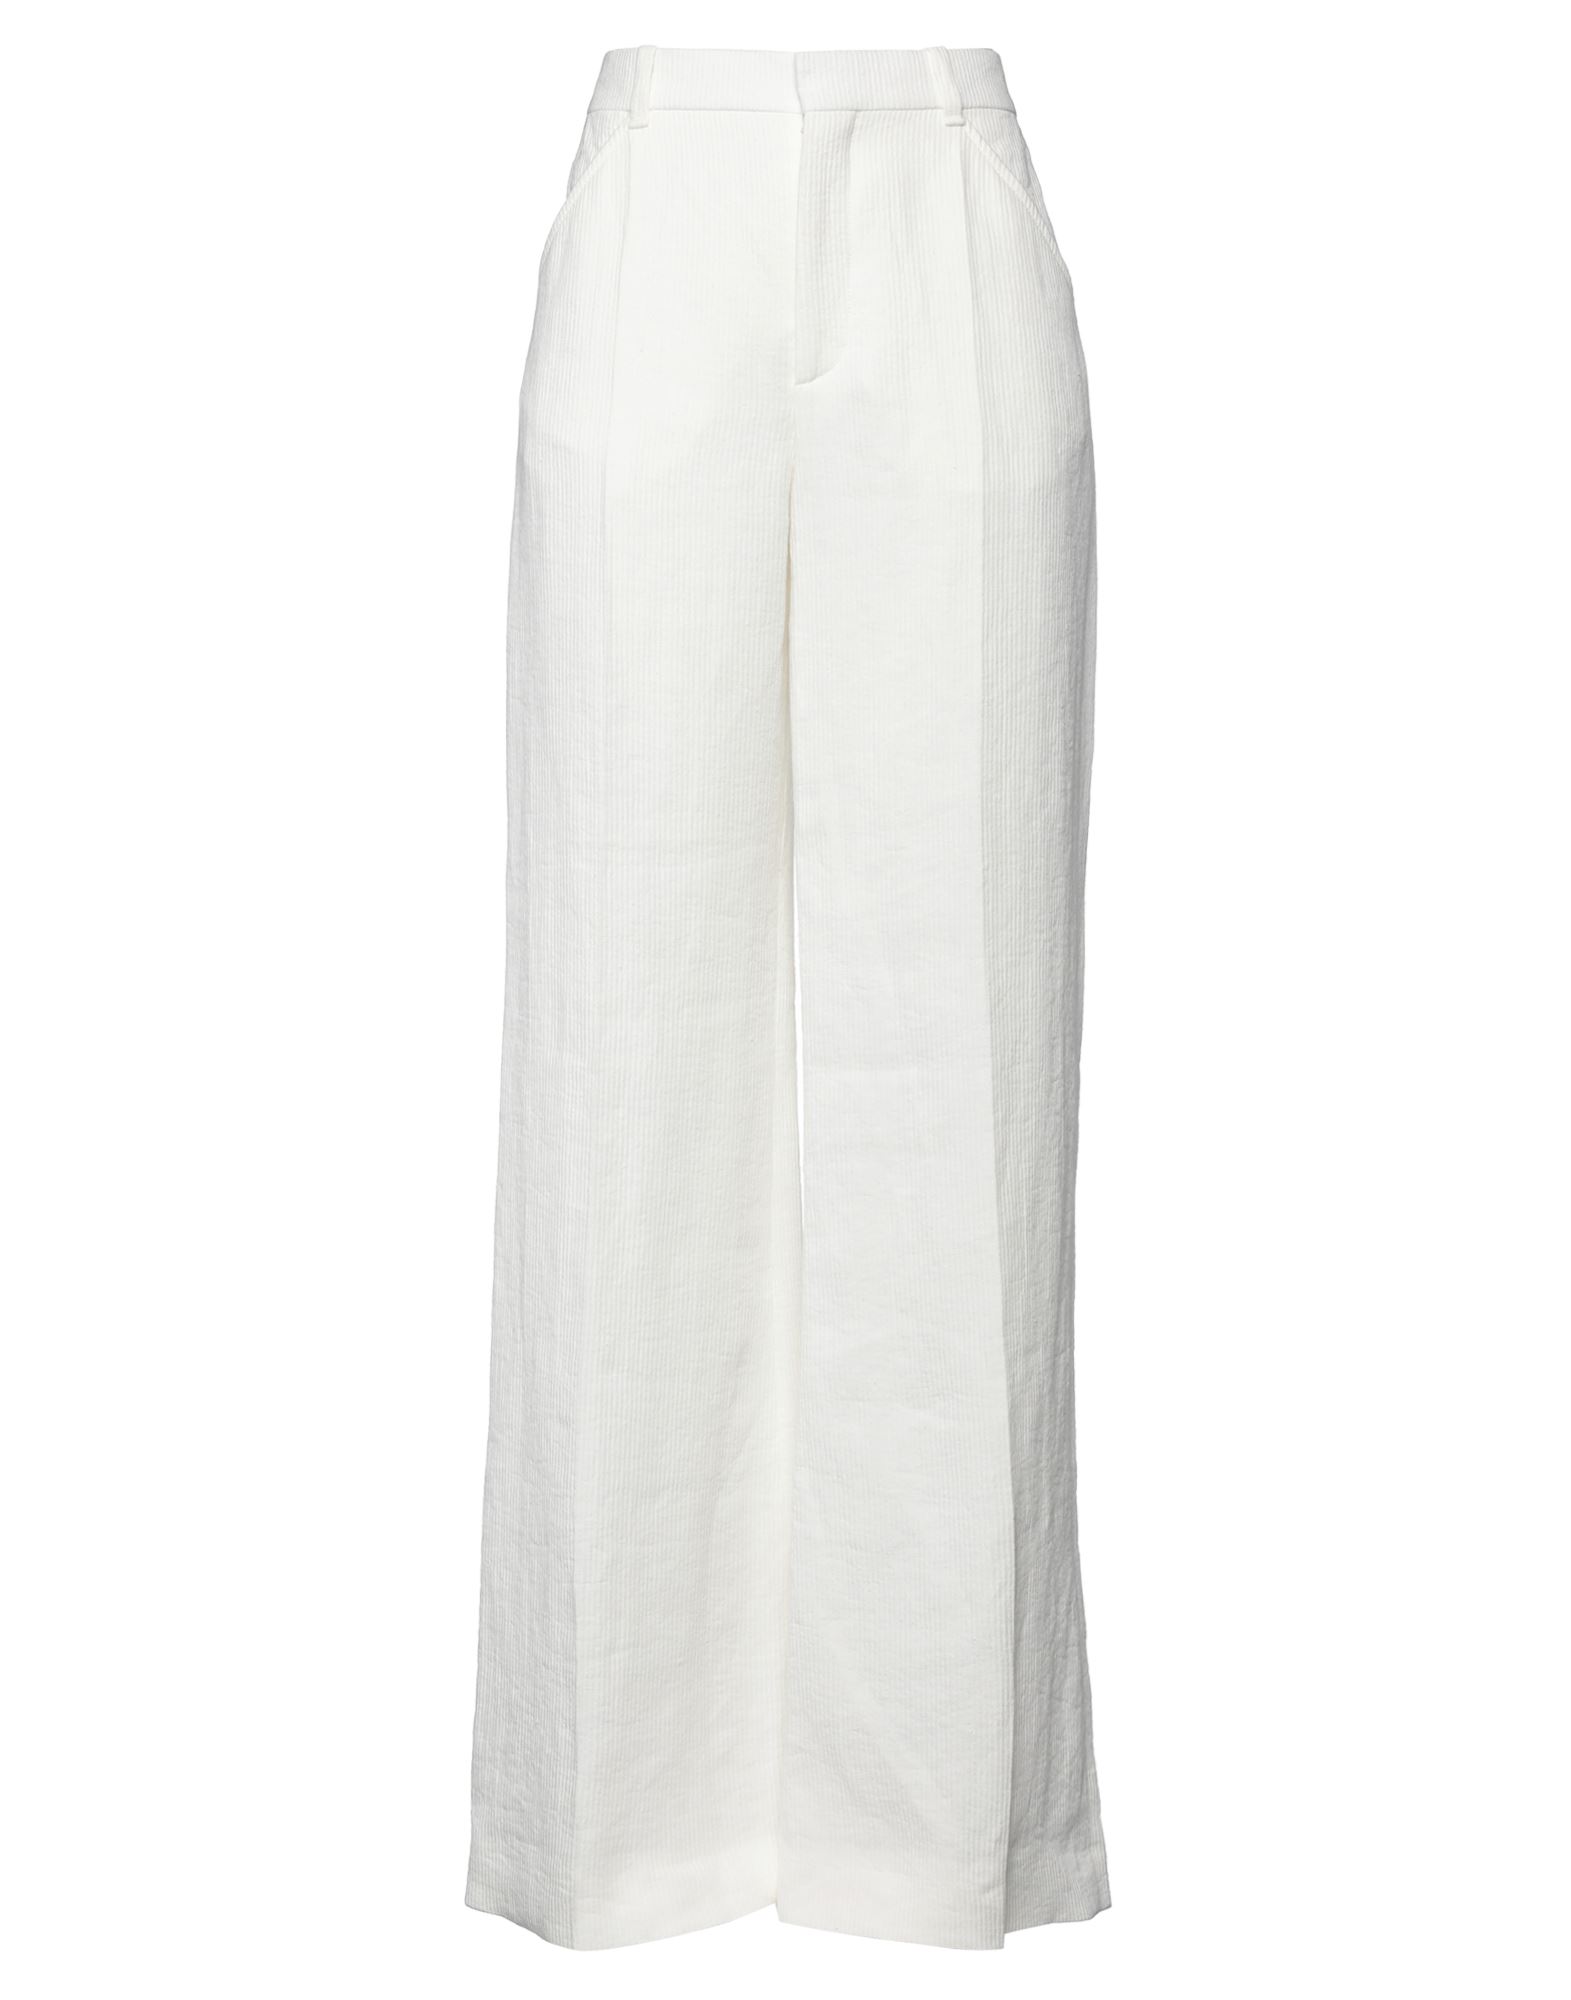 Chloé Woman Pants White Size 8 Linen